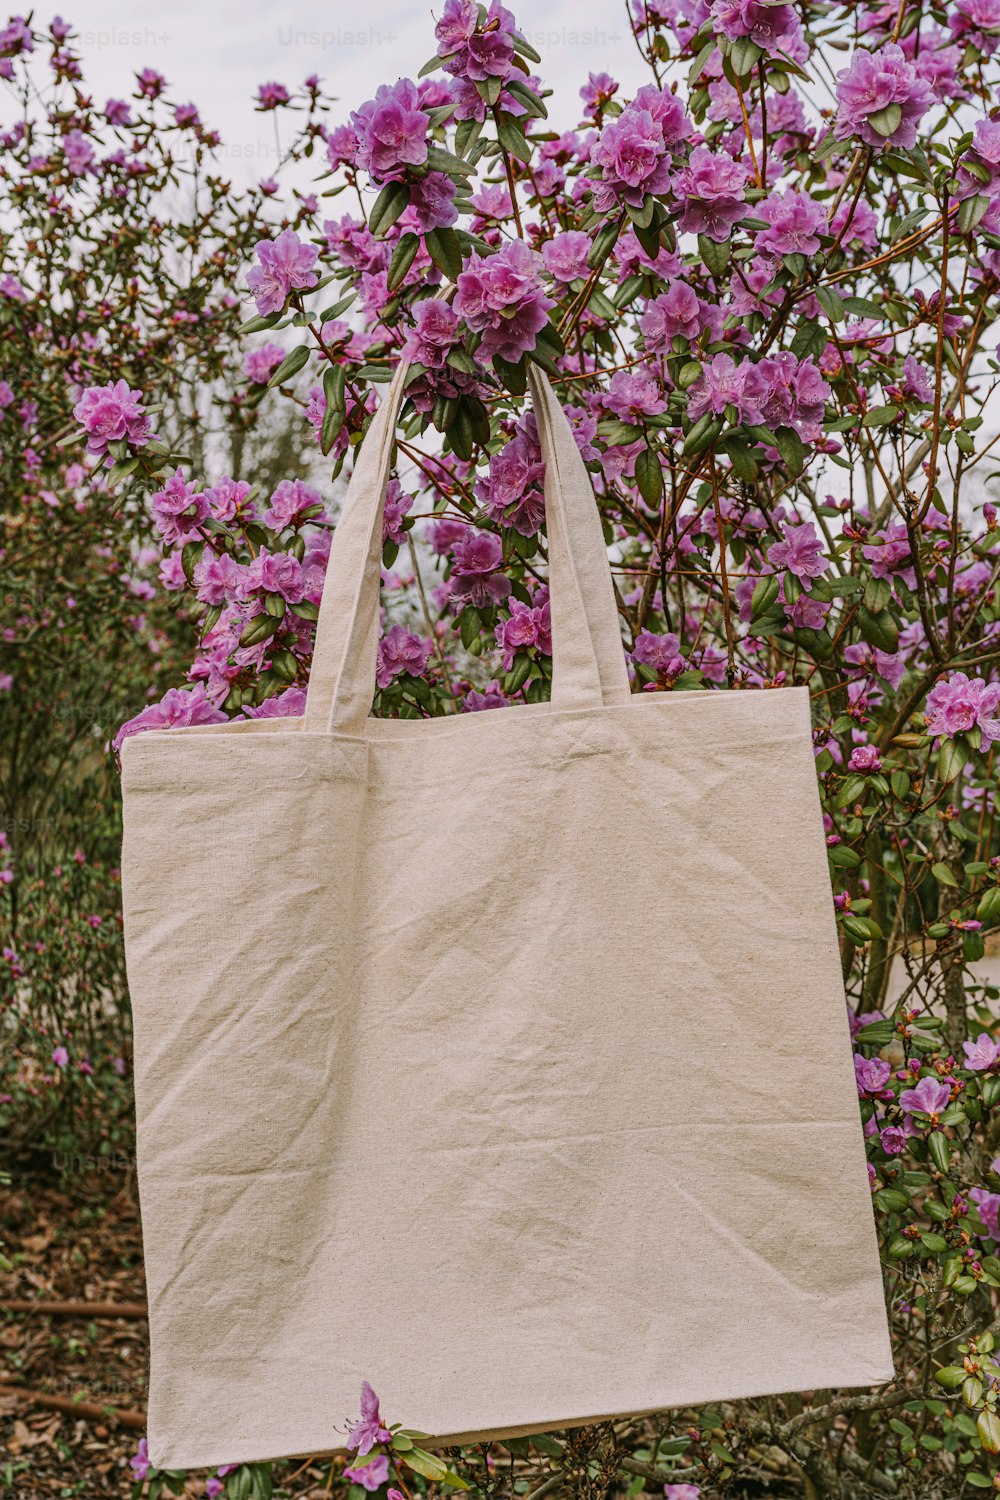 um saco branco pendurado em uma árvore cheia de flores roxas